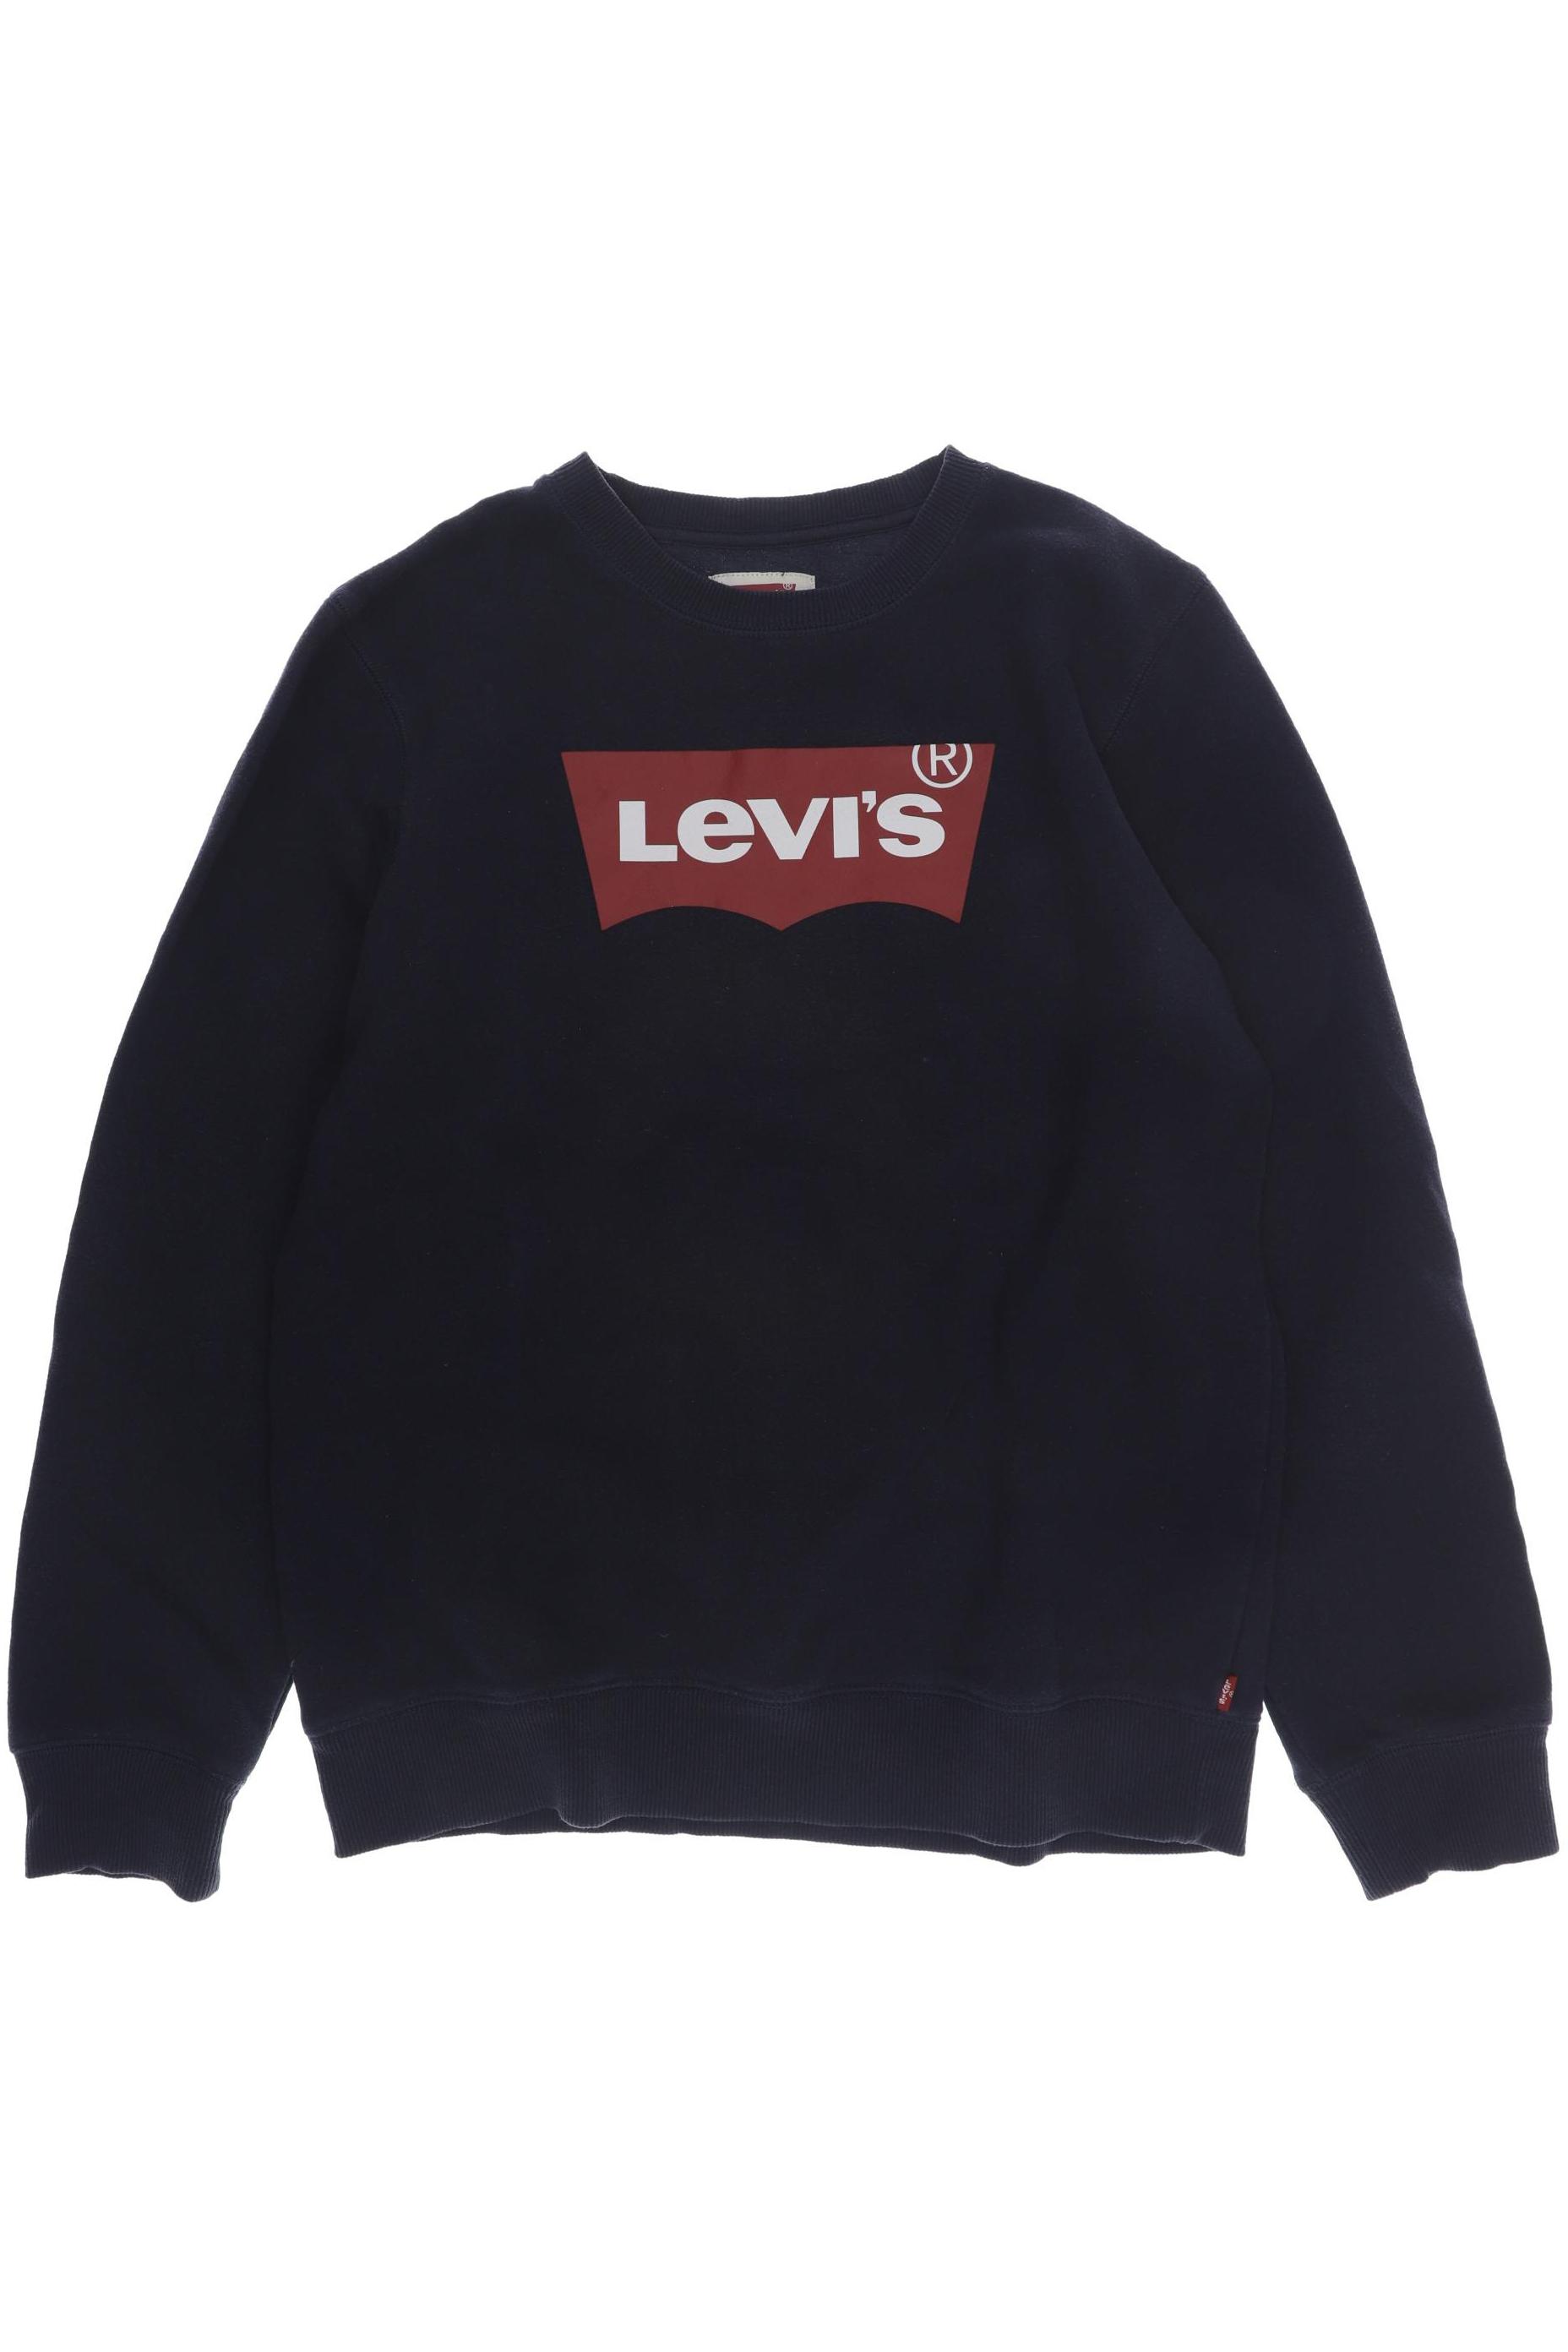 Levis Mädchen Hoodies & Sweater, marineblau von Levis